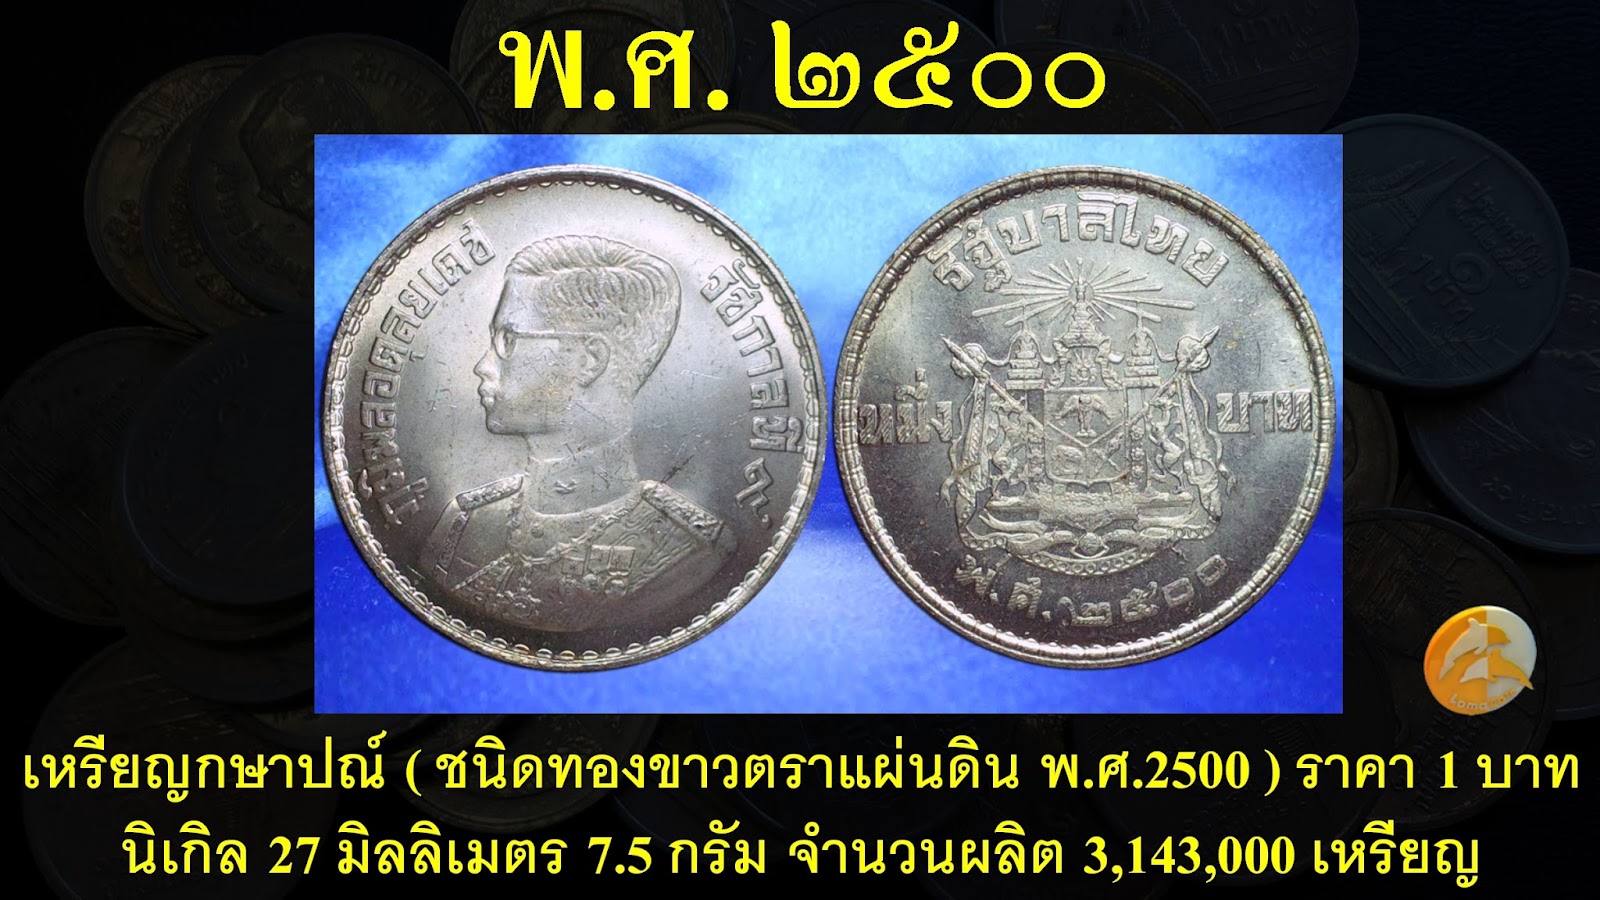 เรื่องเล่า เรื่องเหรียญ: เหรียญกษาปณ์(ชนิดทองขาวตราแผ่นดิน พ.ศ.2500) ราคา 1  บาท